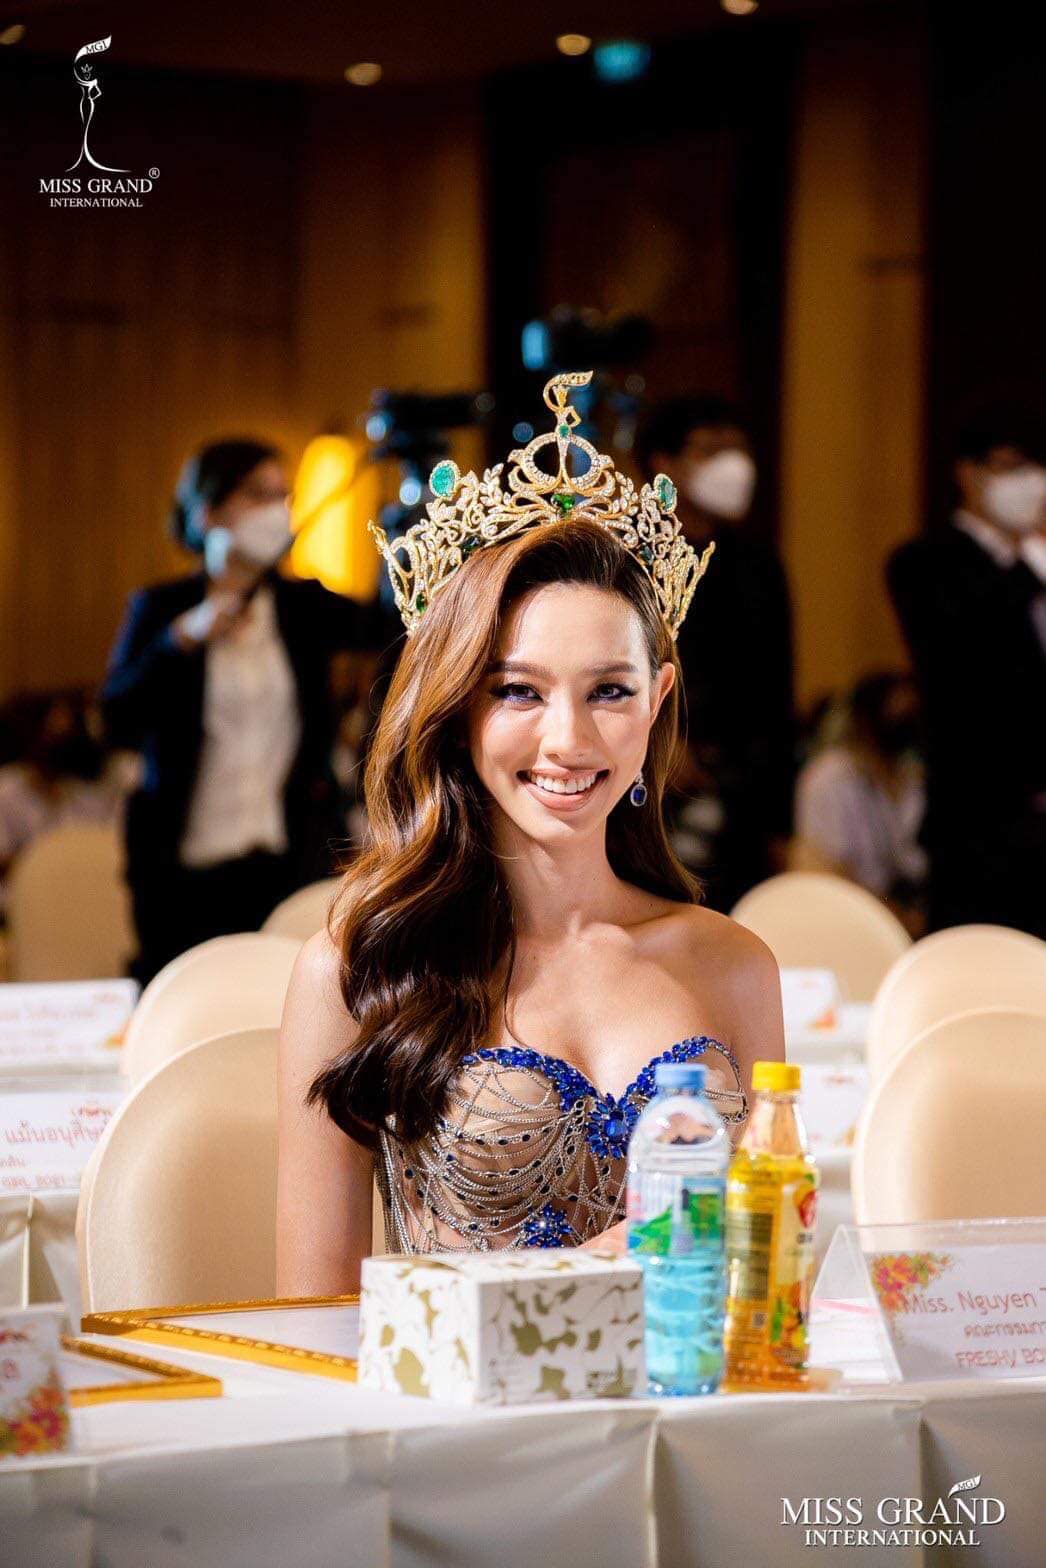 Netizen lắc đầu khó hiểu: Điều gì đang xảy ra với đôi môi sưng vù của Hoa hậu Thùy Tiên? - Ảnh 3